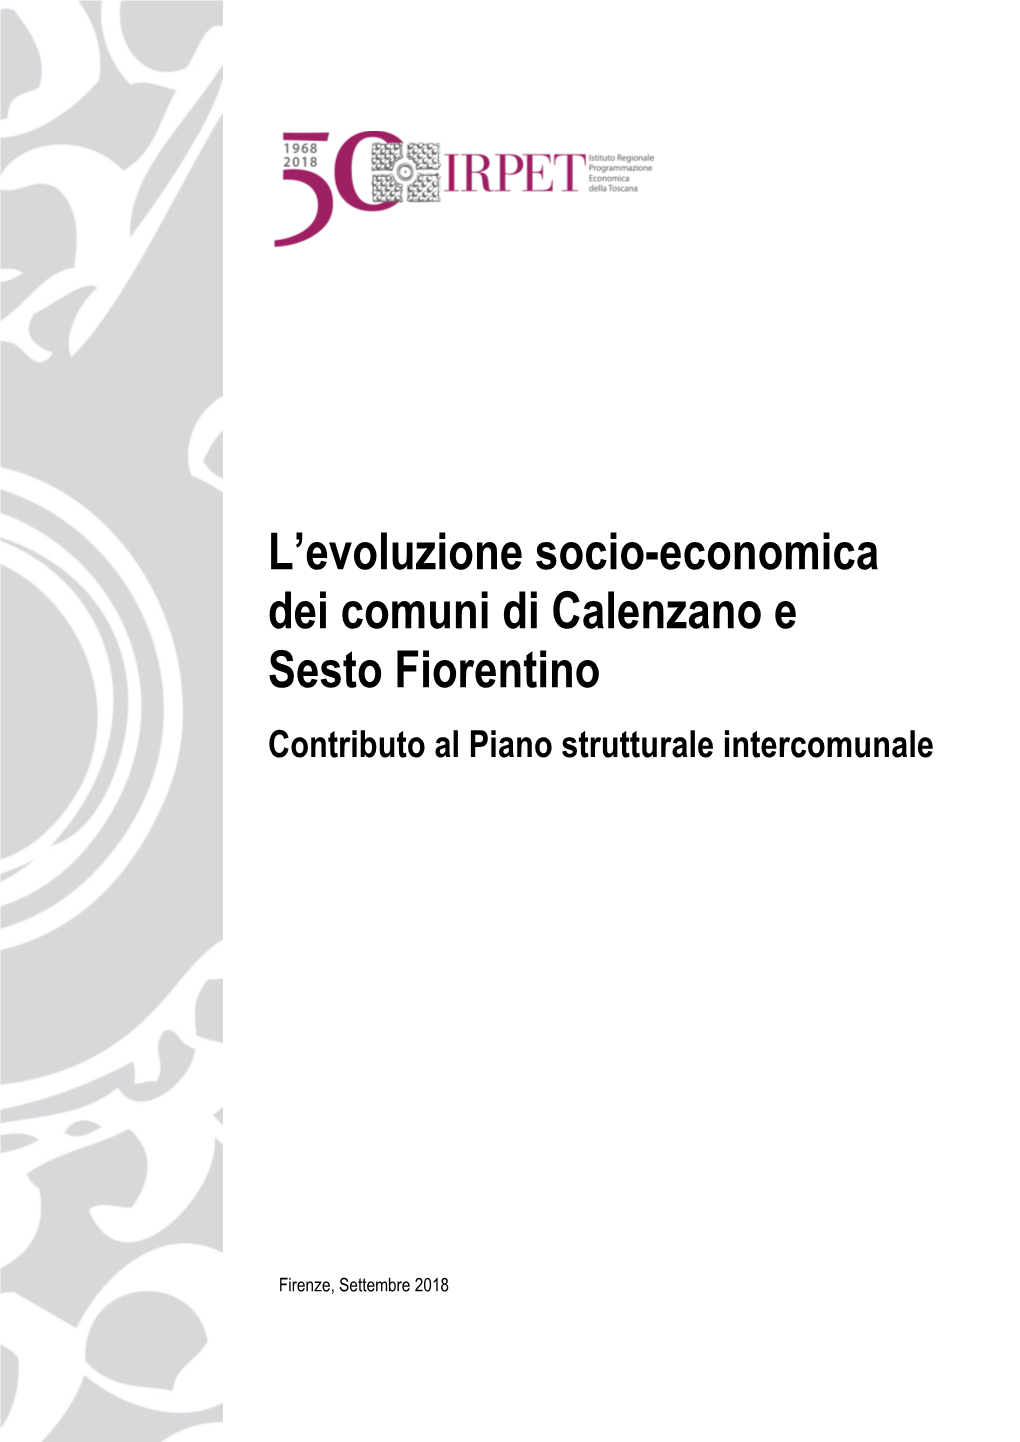 L'evoluzione Socio-Economica Dei Comuni Di Calenzano E Sesto